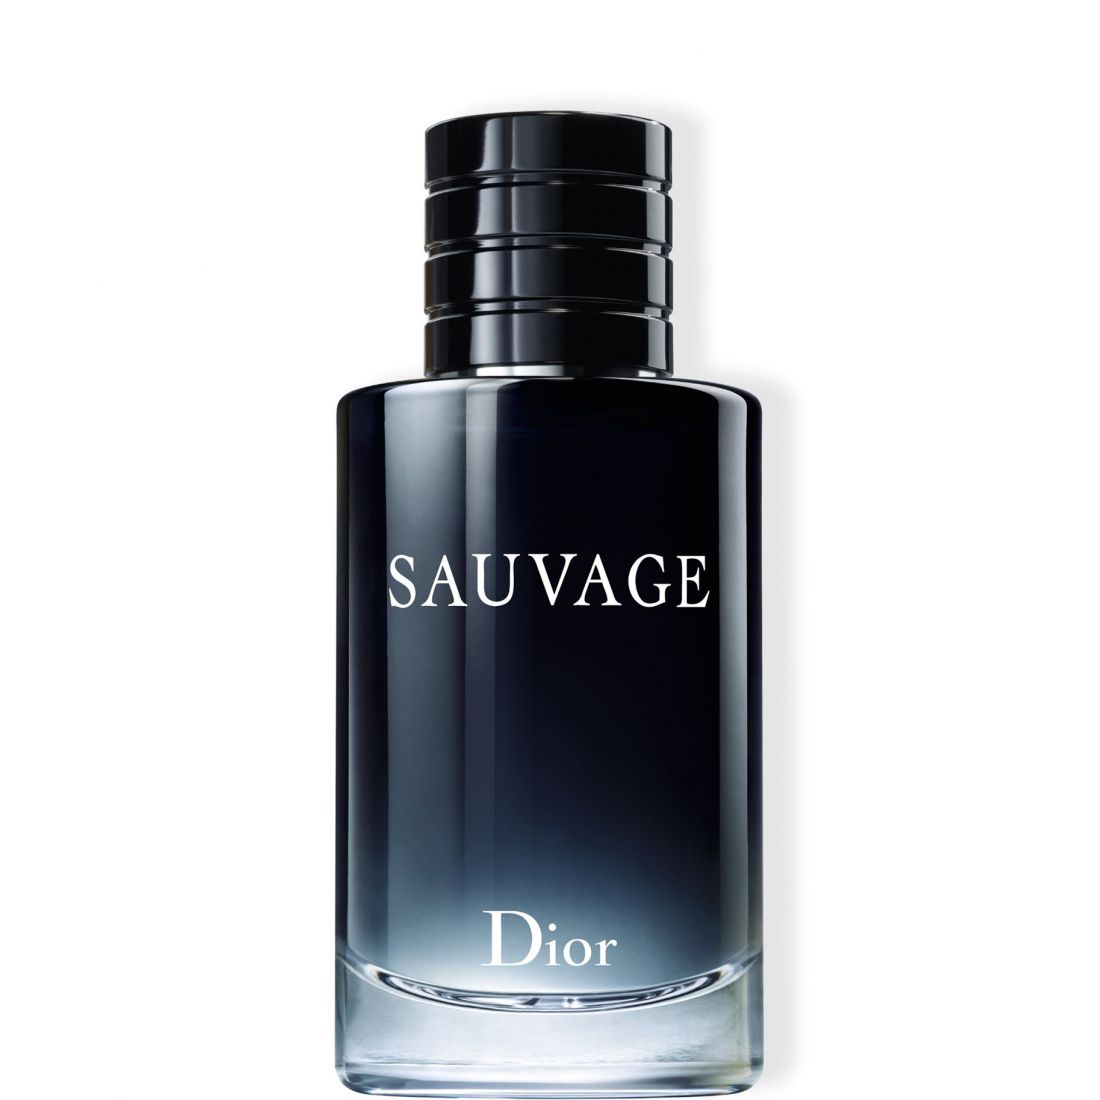 Dior - Eau de toilette 'Sauvage' - 200 ml